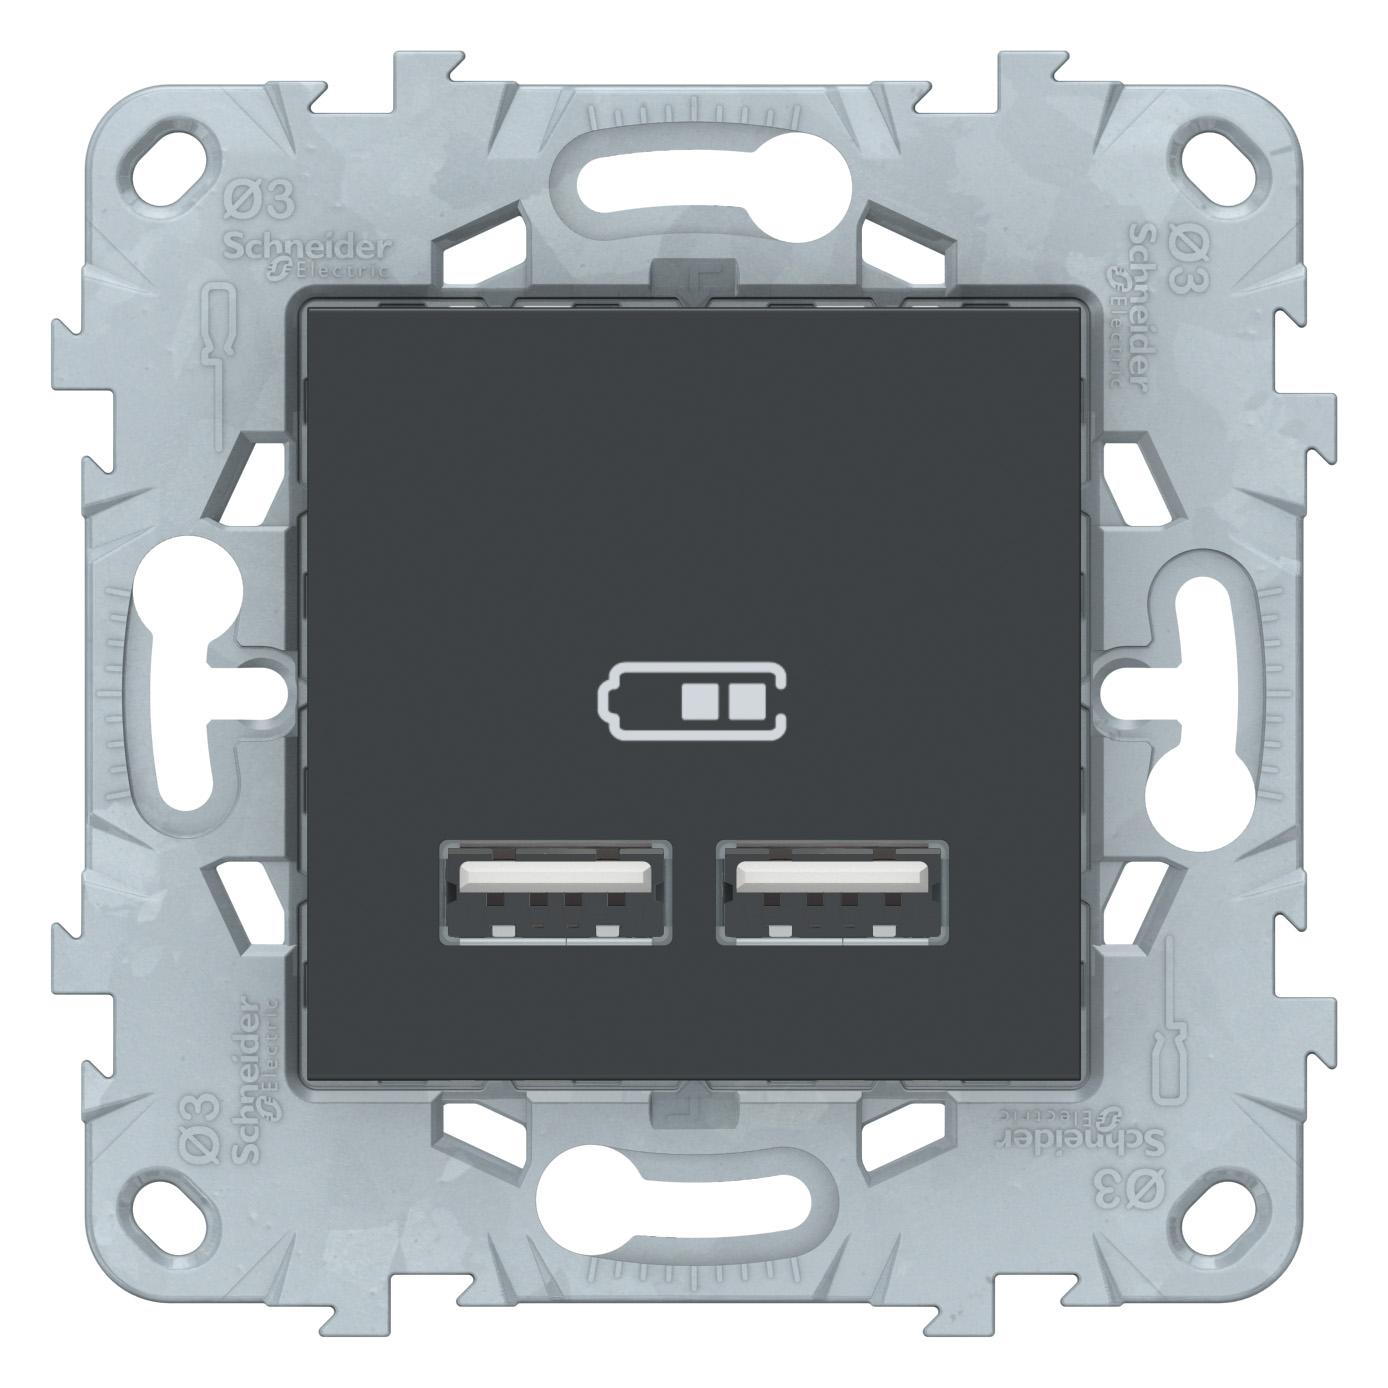  артикул NU541854 название Зарядное устройство USB с двумя выходами , Антрацит, серия Unica New, Schneider Electric